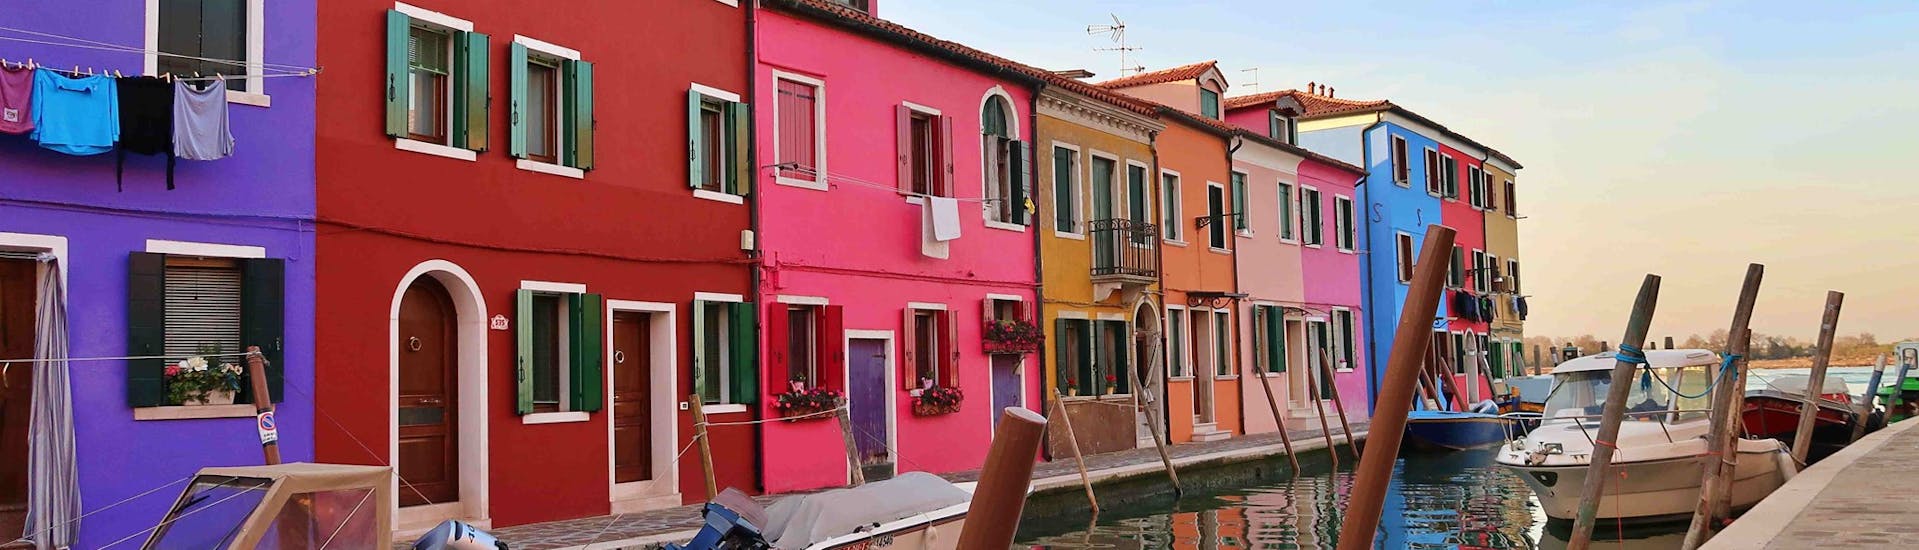 Casas coloridas que son vistas a lo largo de un canal en Burano, durante el viaje en barco desde Venecia a Murano y Burano, con Il Doge di Venezia.